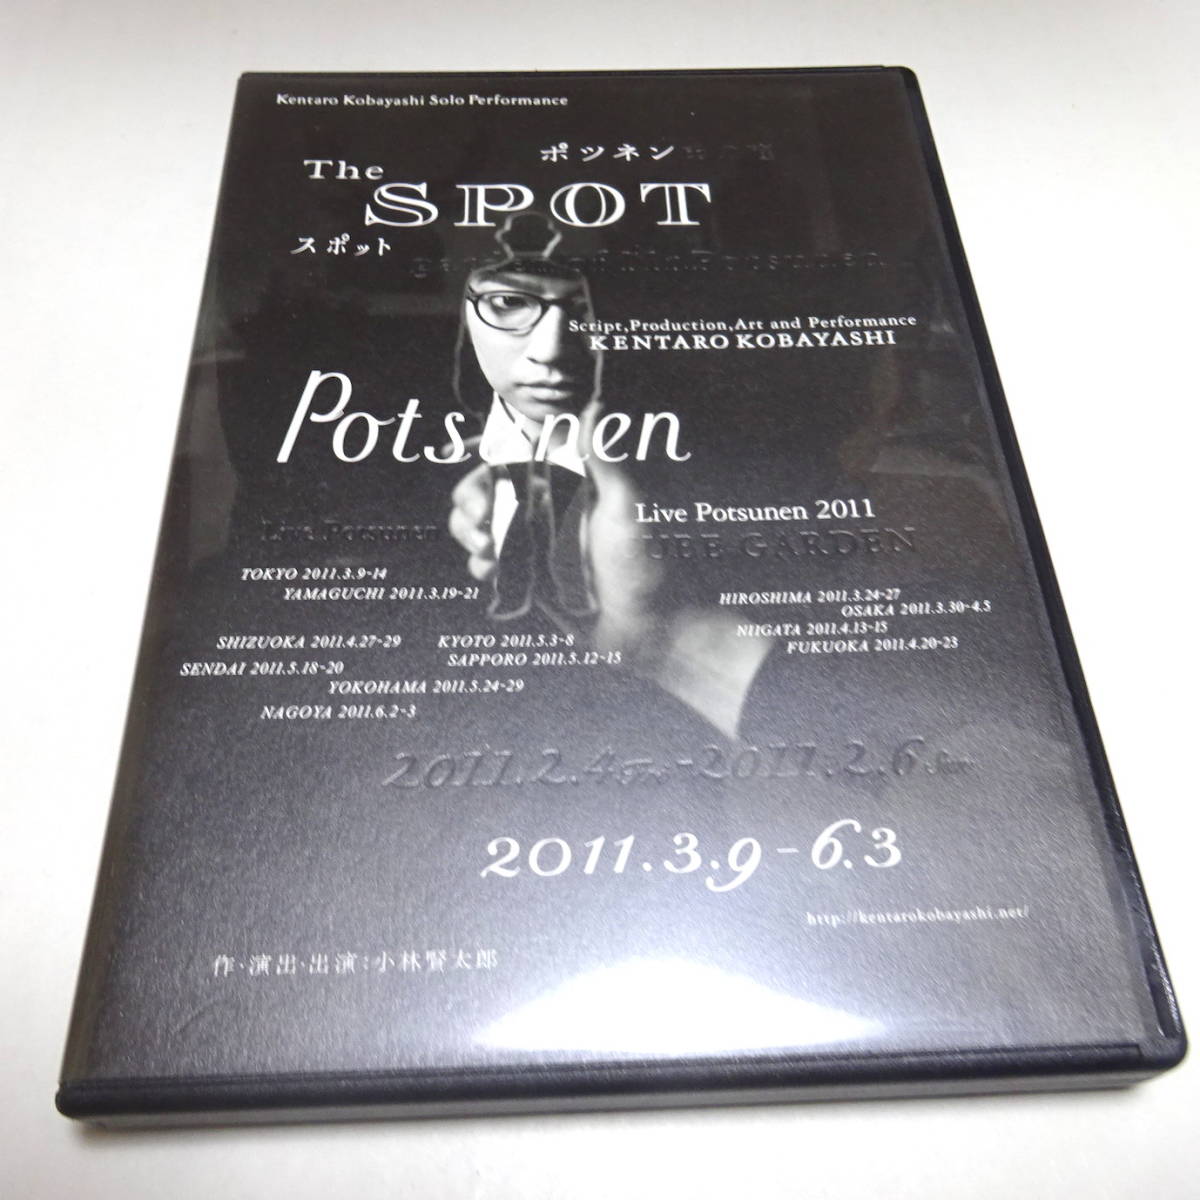 Использованный DVD Kentaro Kobayashi Live Potsunen 2011 "The Spot" Kentaro Kobayashi / Potsnen 2011